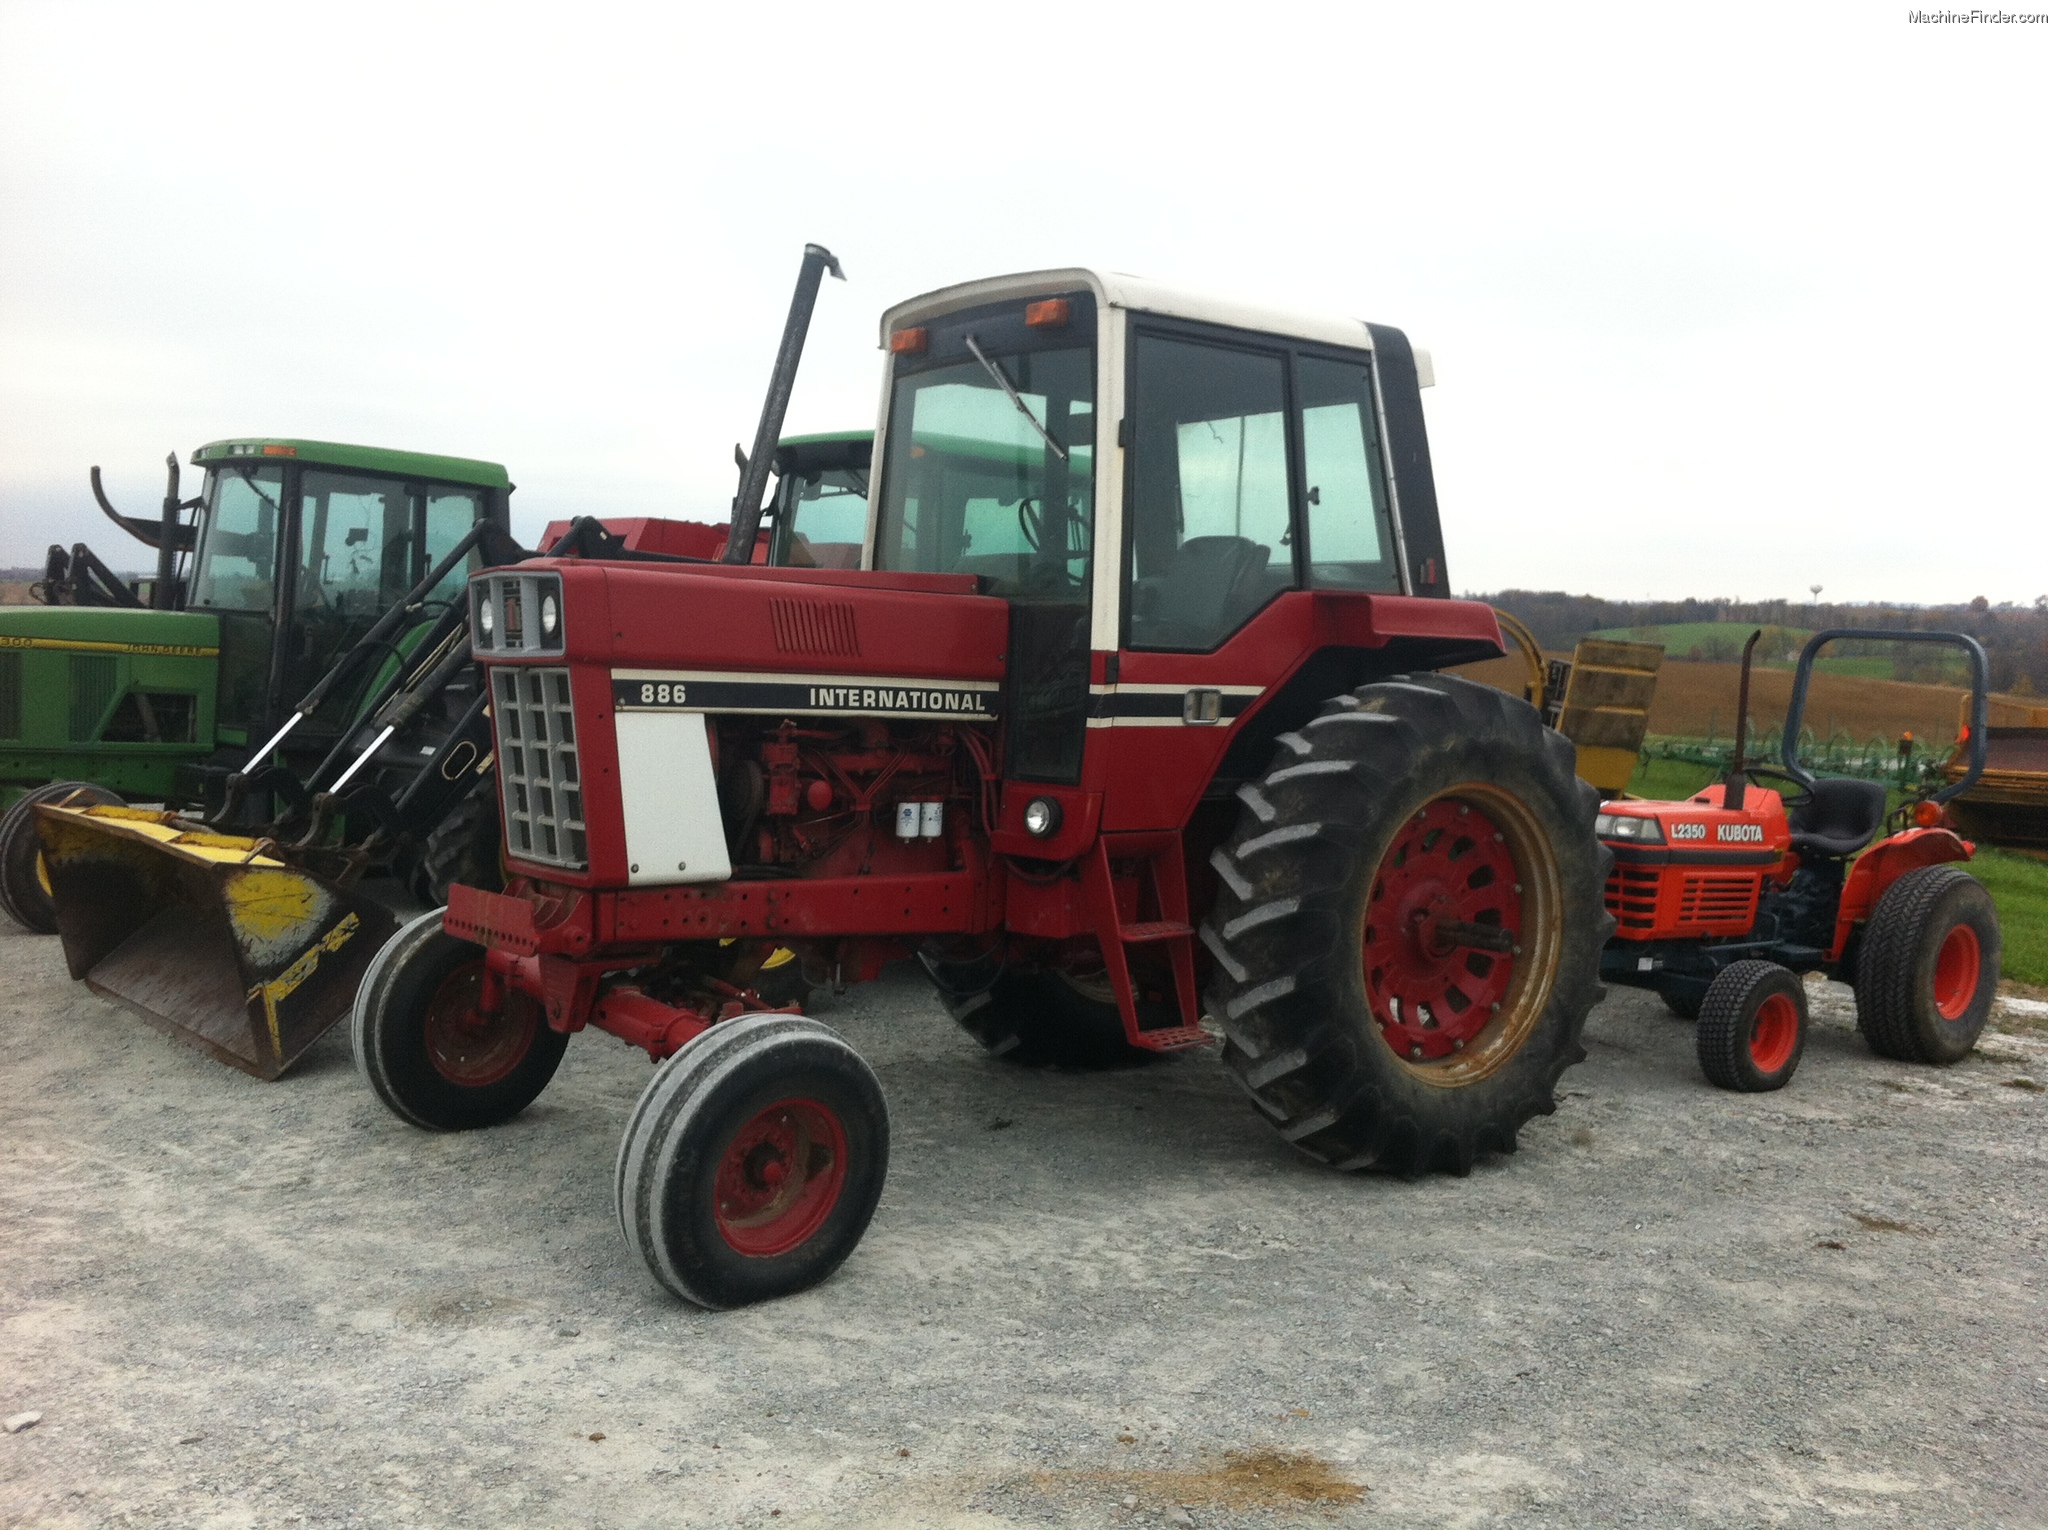 International Harvester 886 Tractors - Row Crop (+100hp) - John Deere ...